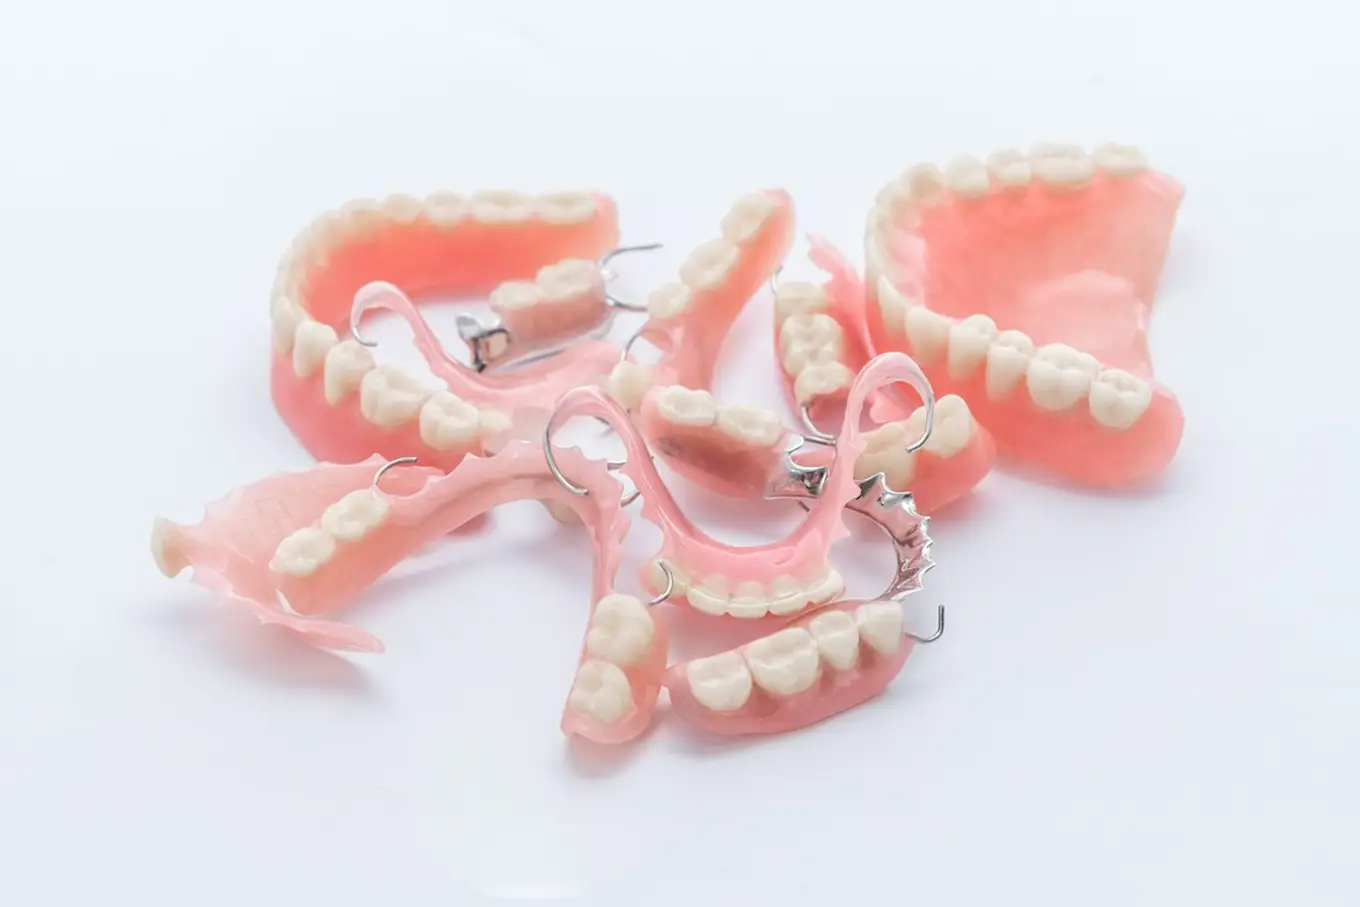 kilka protez zębowych